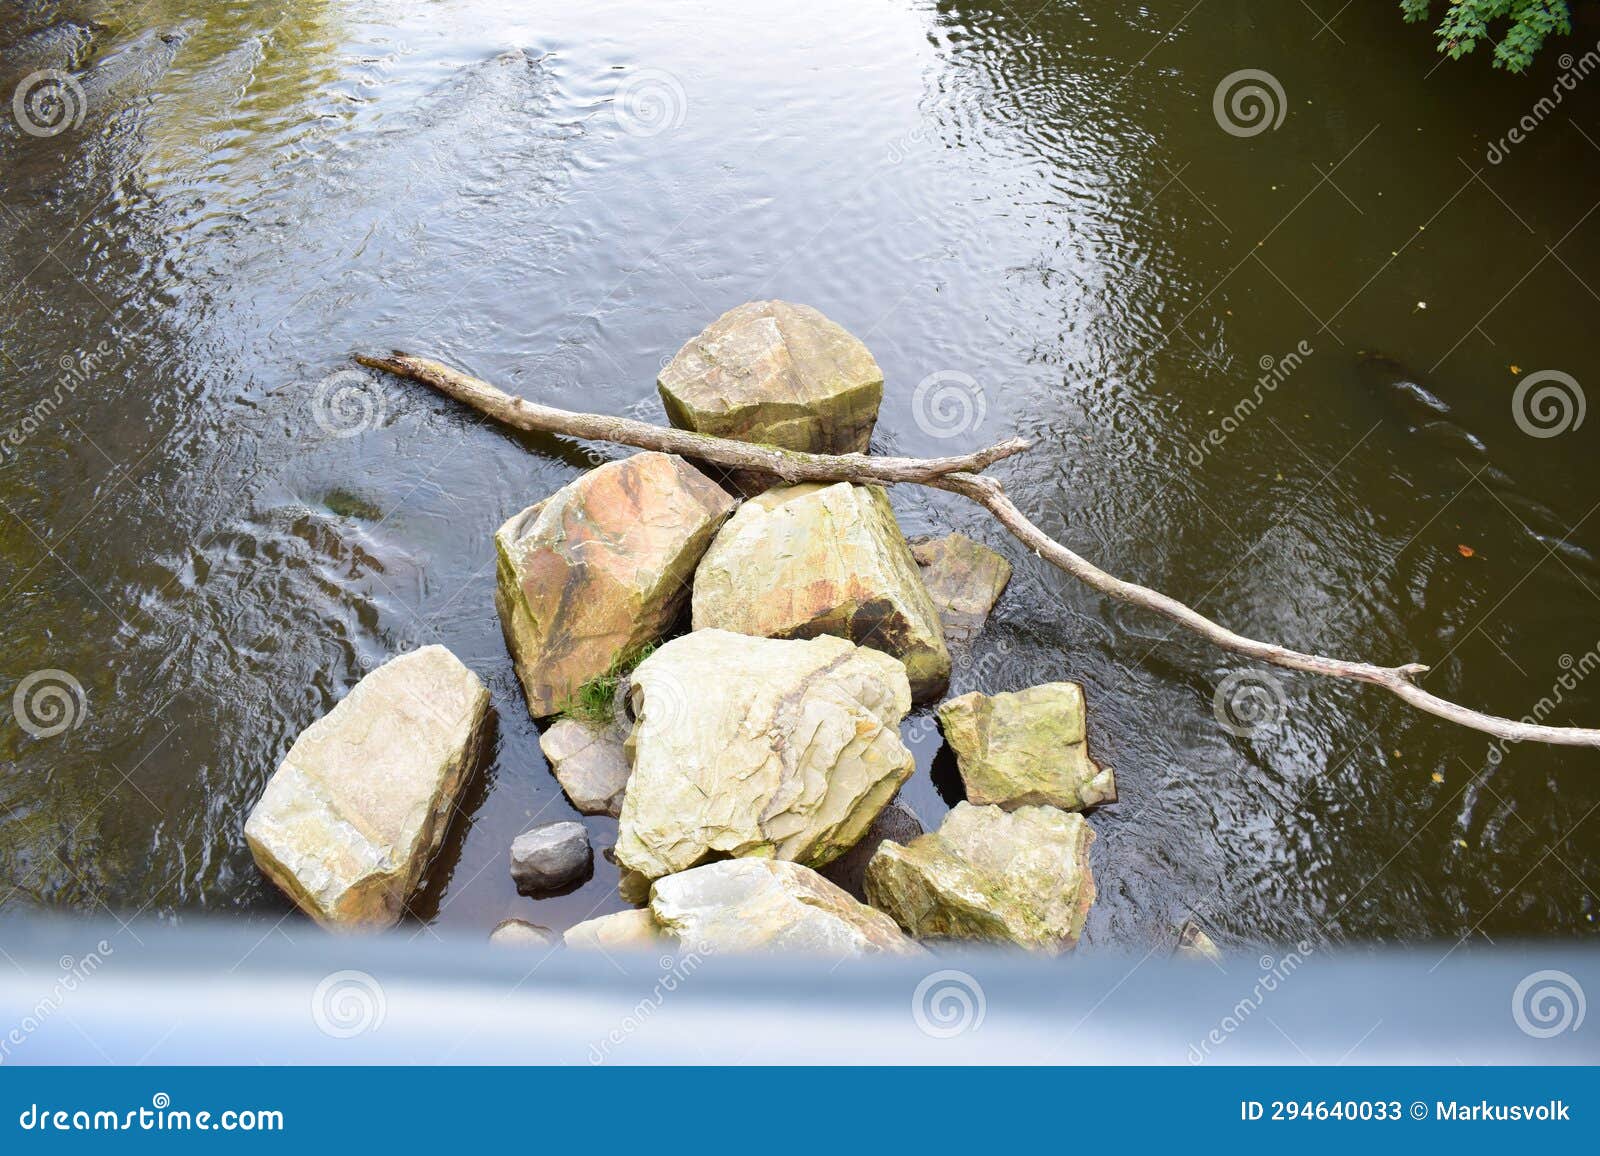 big rocks in a river